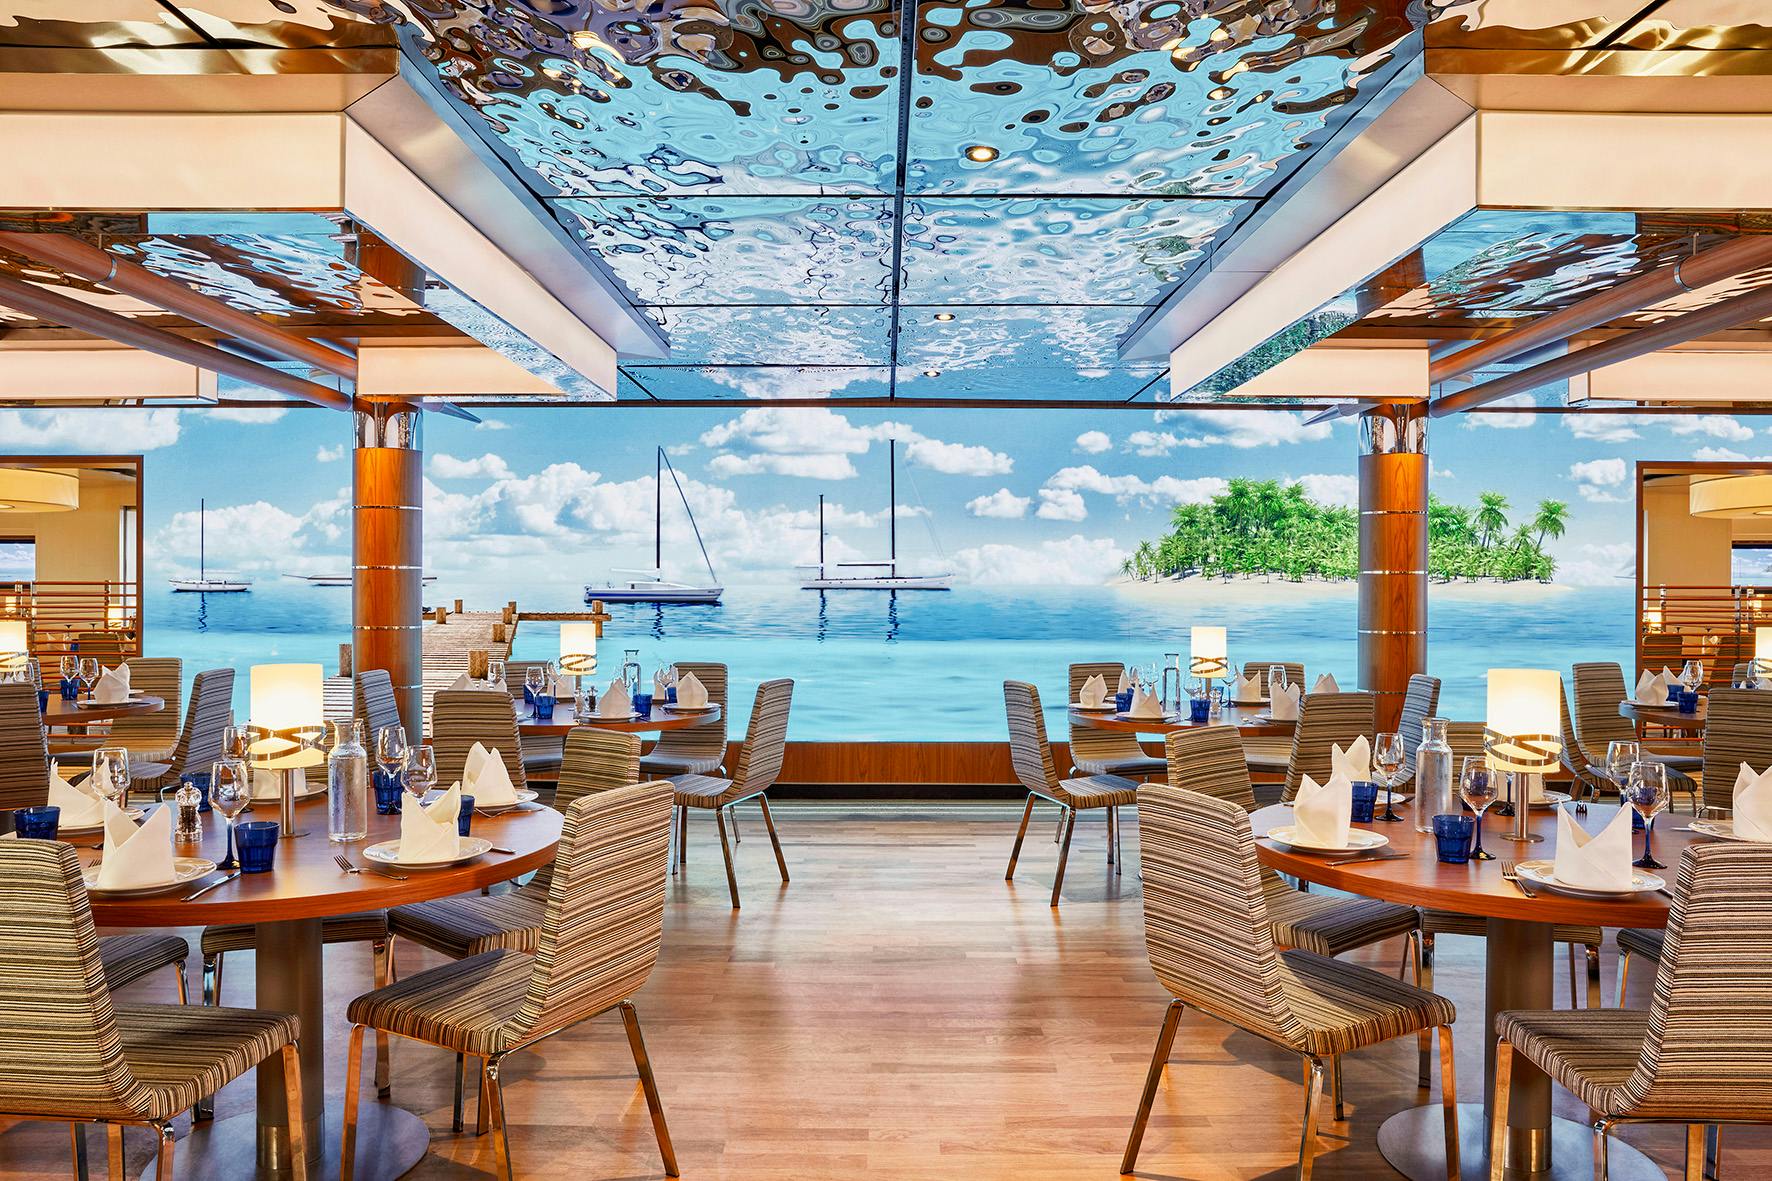 AIDacosma AIDAnova Yacht Club Restaurant